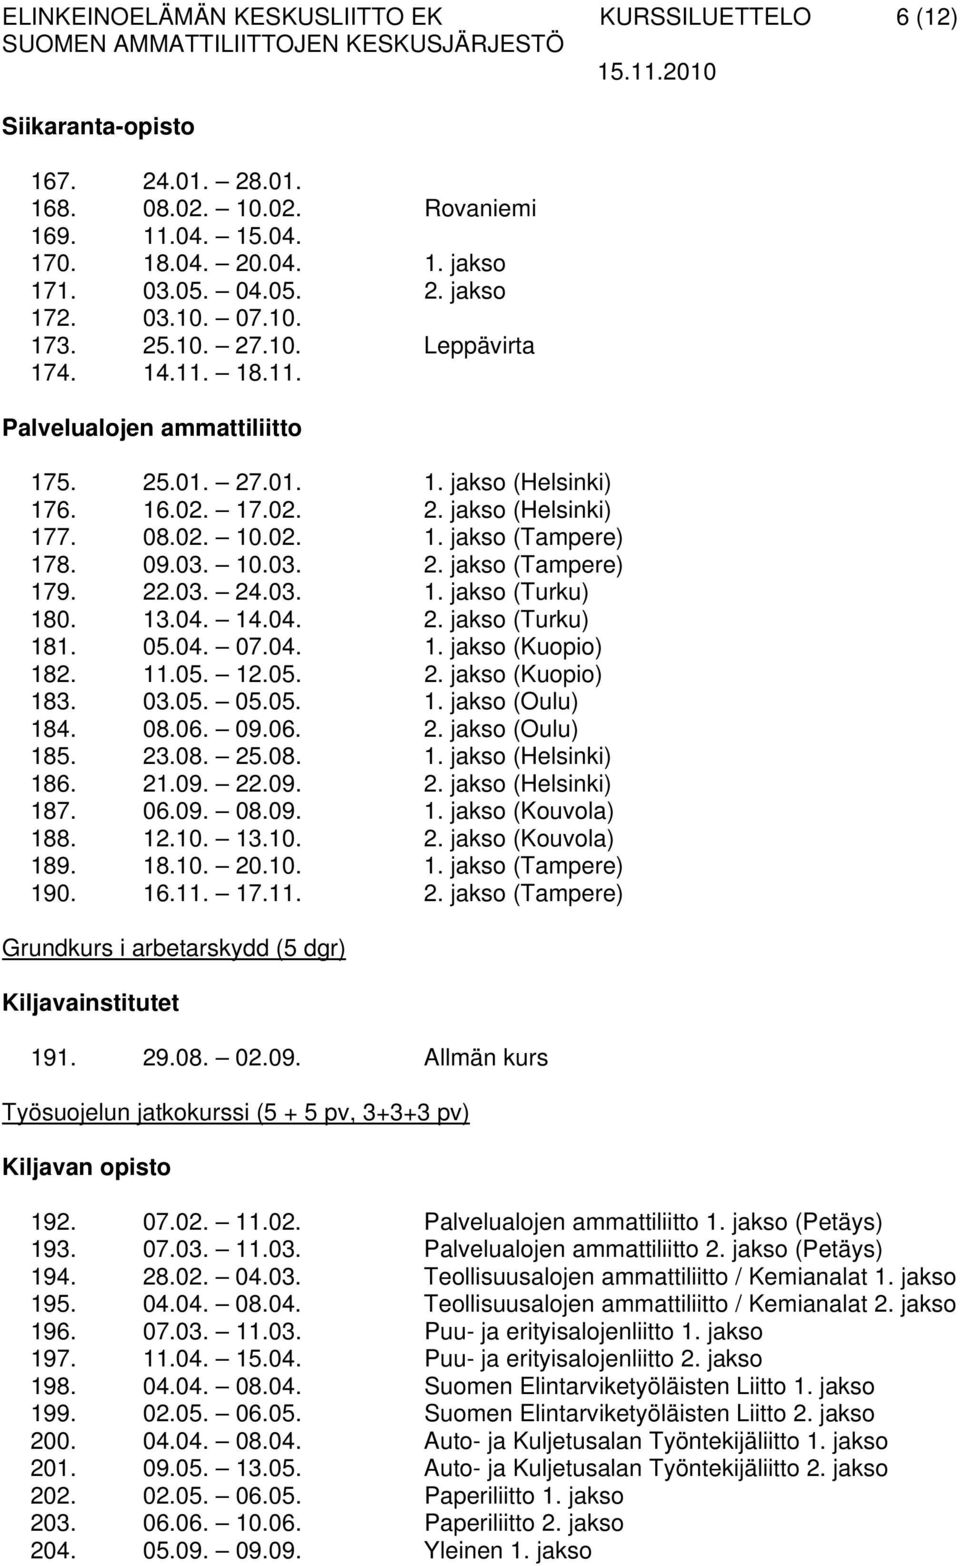 10.03. 2. jakso (Tampere) 179. 22.03. 24.03. 1. jakso (Turku) 180. 13.04. 14.04. 2. jakso (Turku) 181. 05.04. 07.04. 1. jakso (Kuopio) 182. 11.05. 12.05. 2. jakso (Kuopio) 183. 03.05. 05.05. 1. jakso (Oulu) 184.